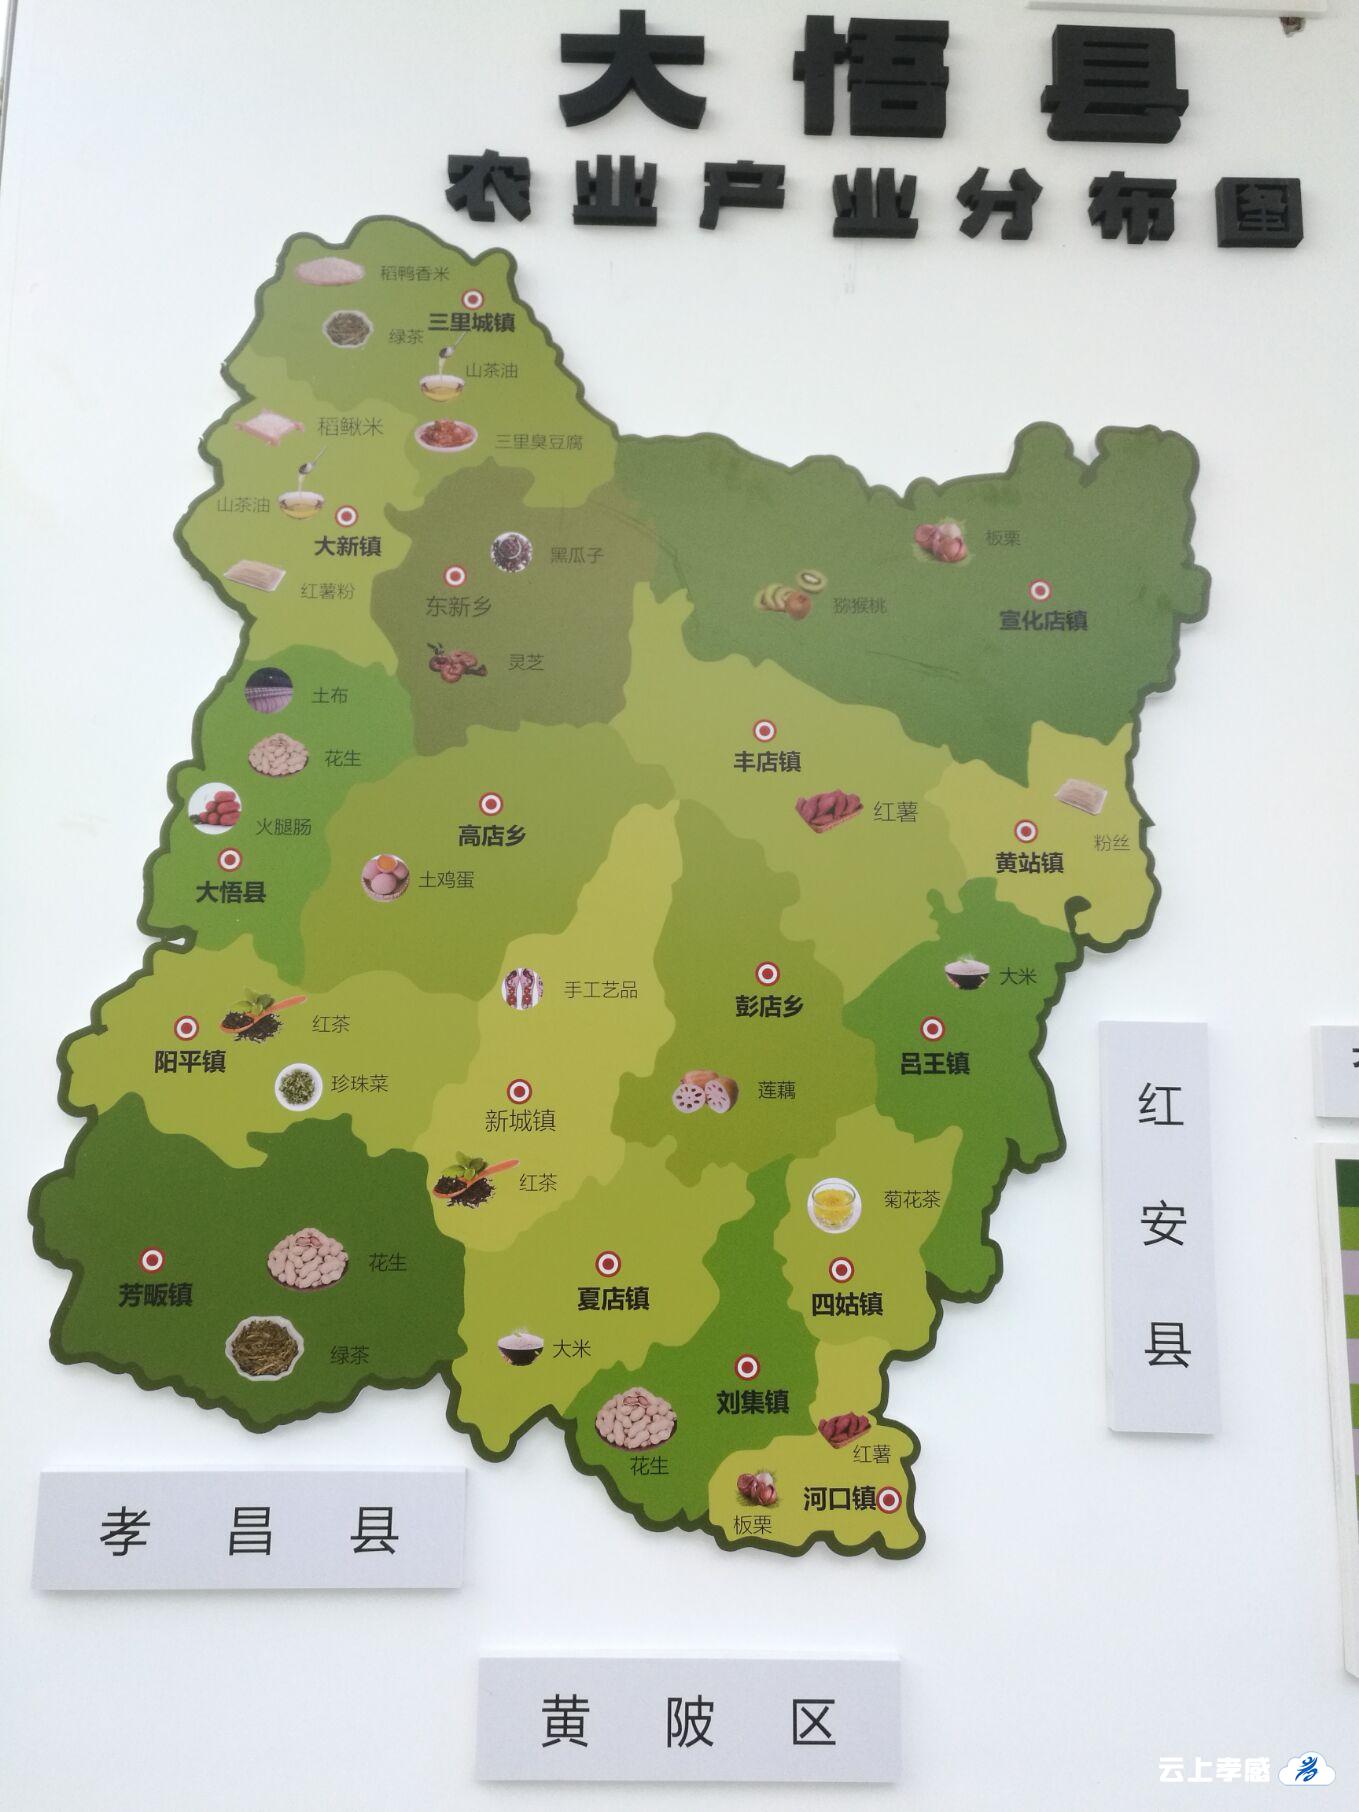 随着今年8月27日大悟县成功举办电子商务公共服务中心运营,农村淘宝